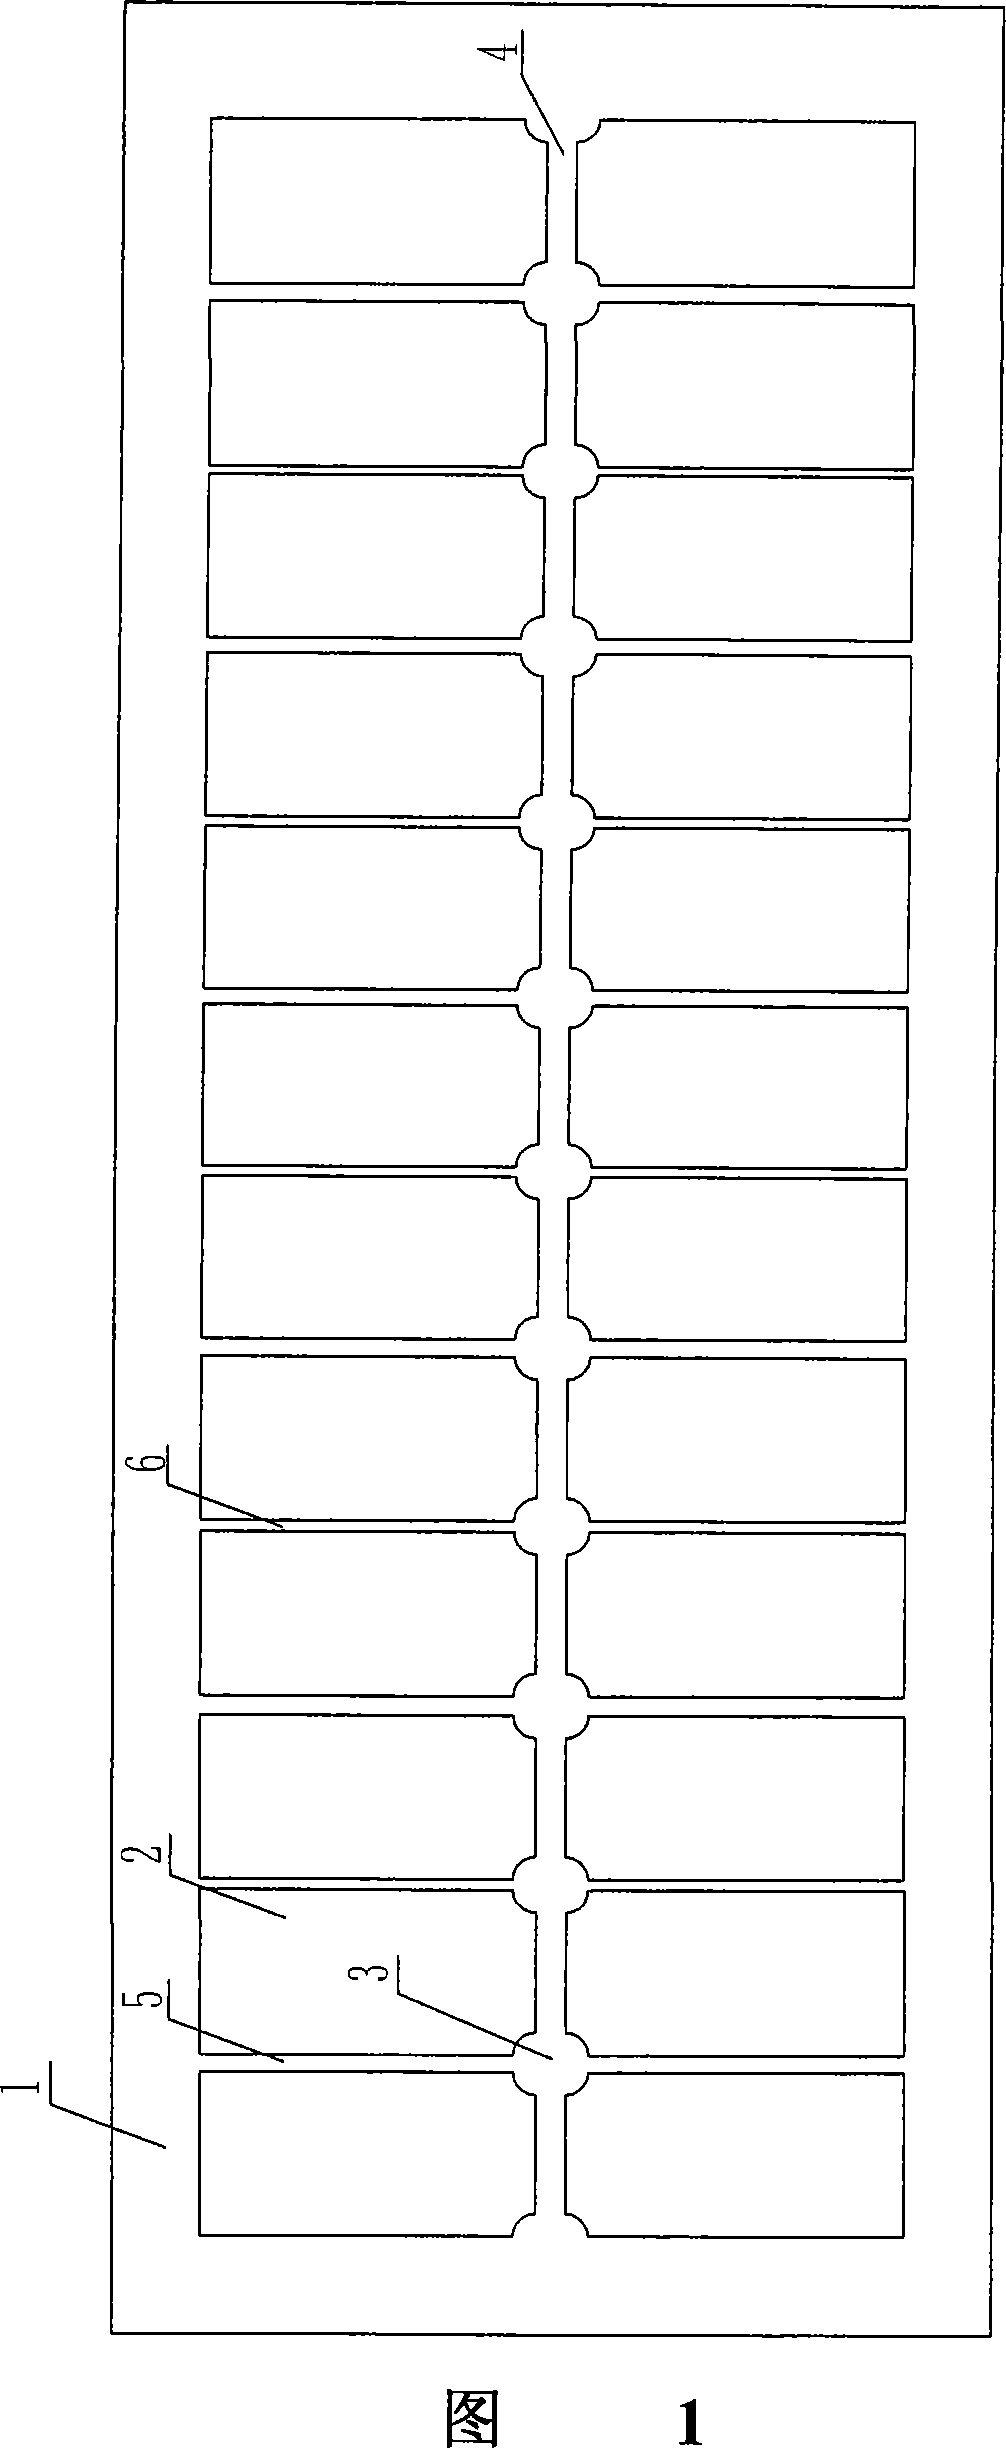 Aluminum electrolysis bath anode arrangement scheme